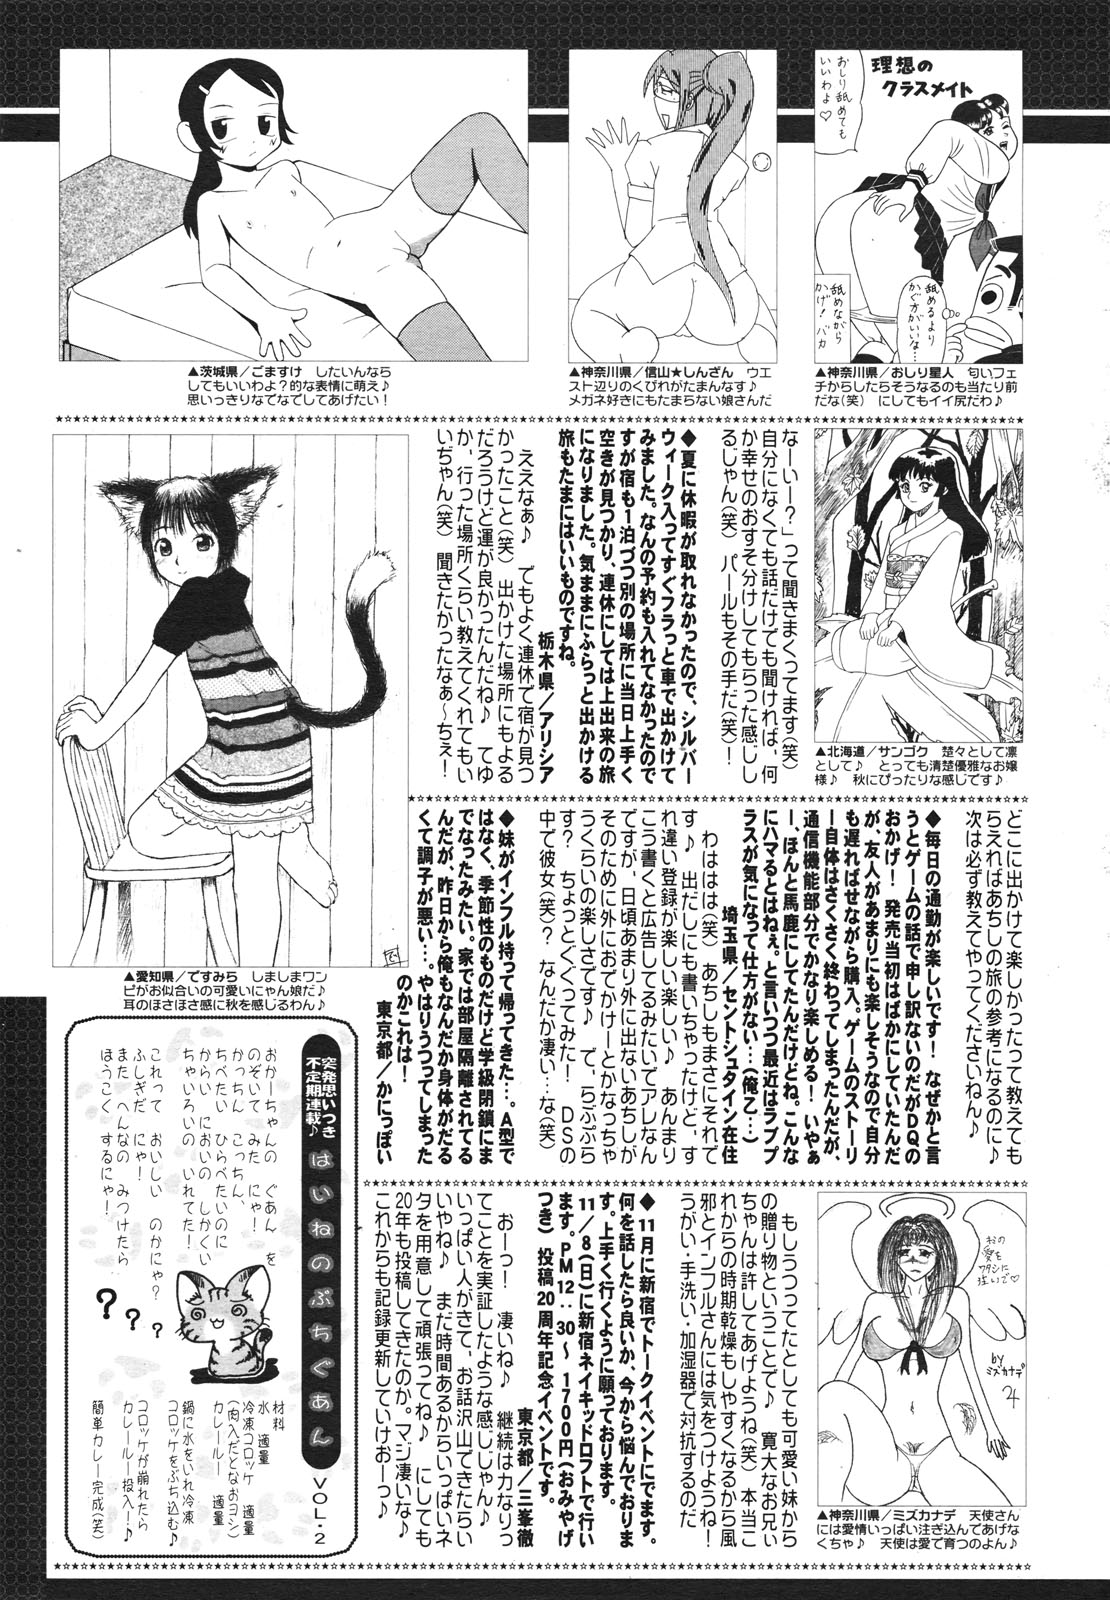 コミックゼロエクス Vol.23 2009年11月号